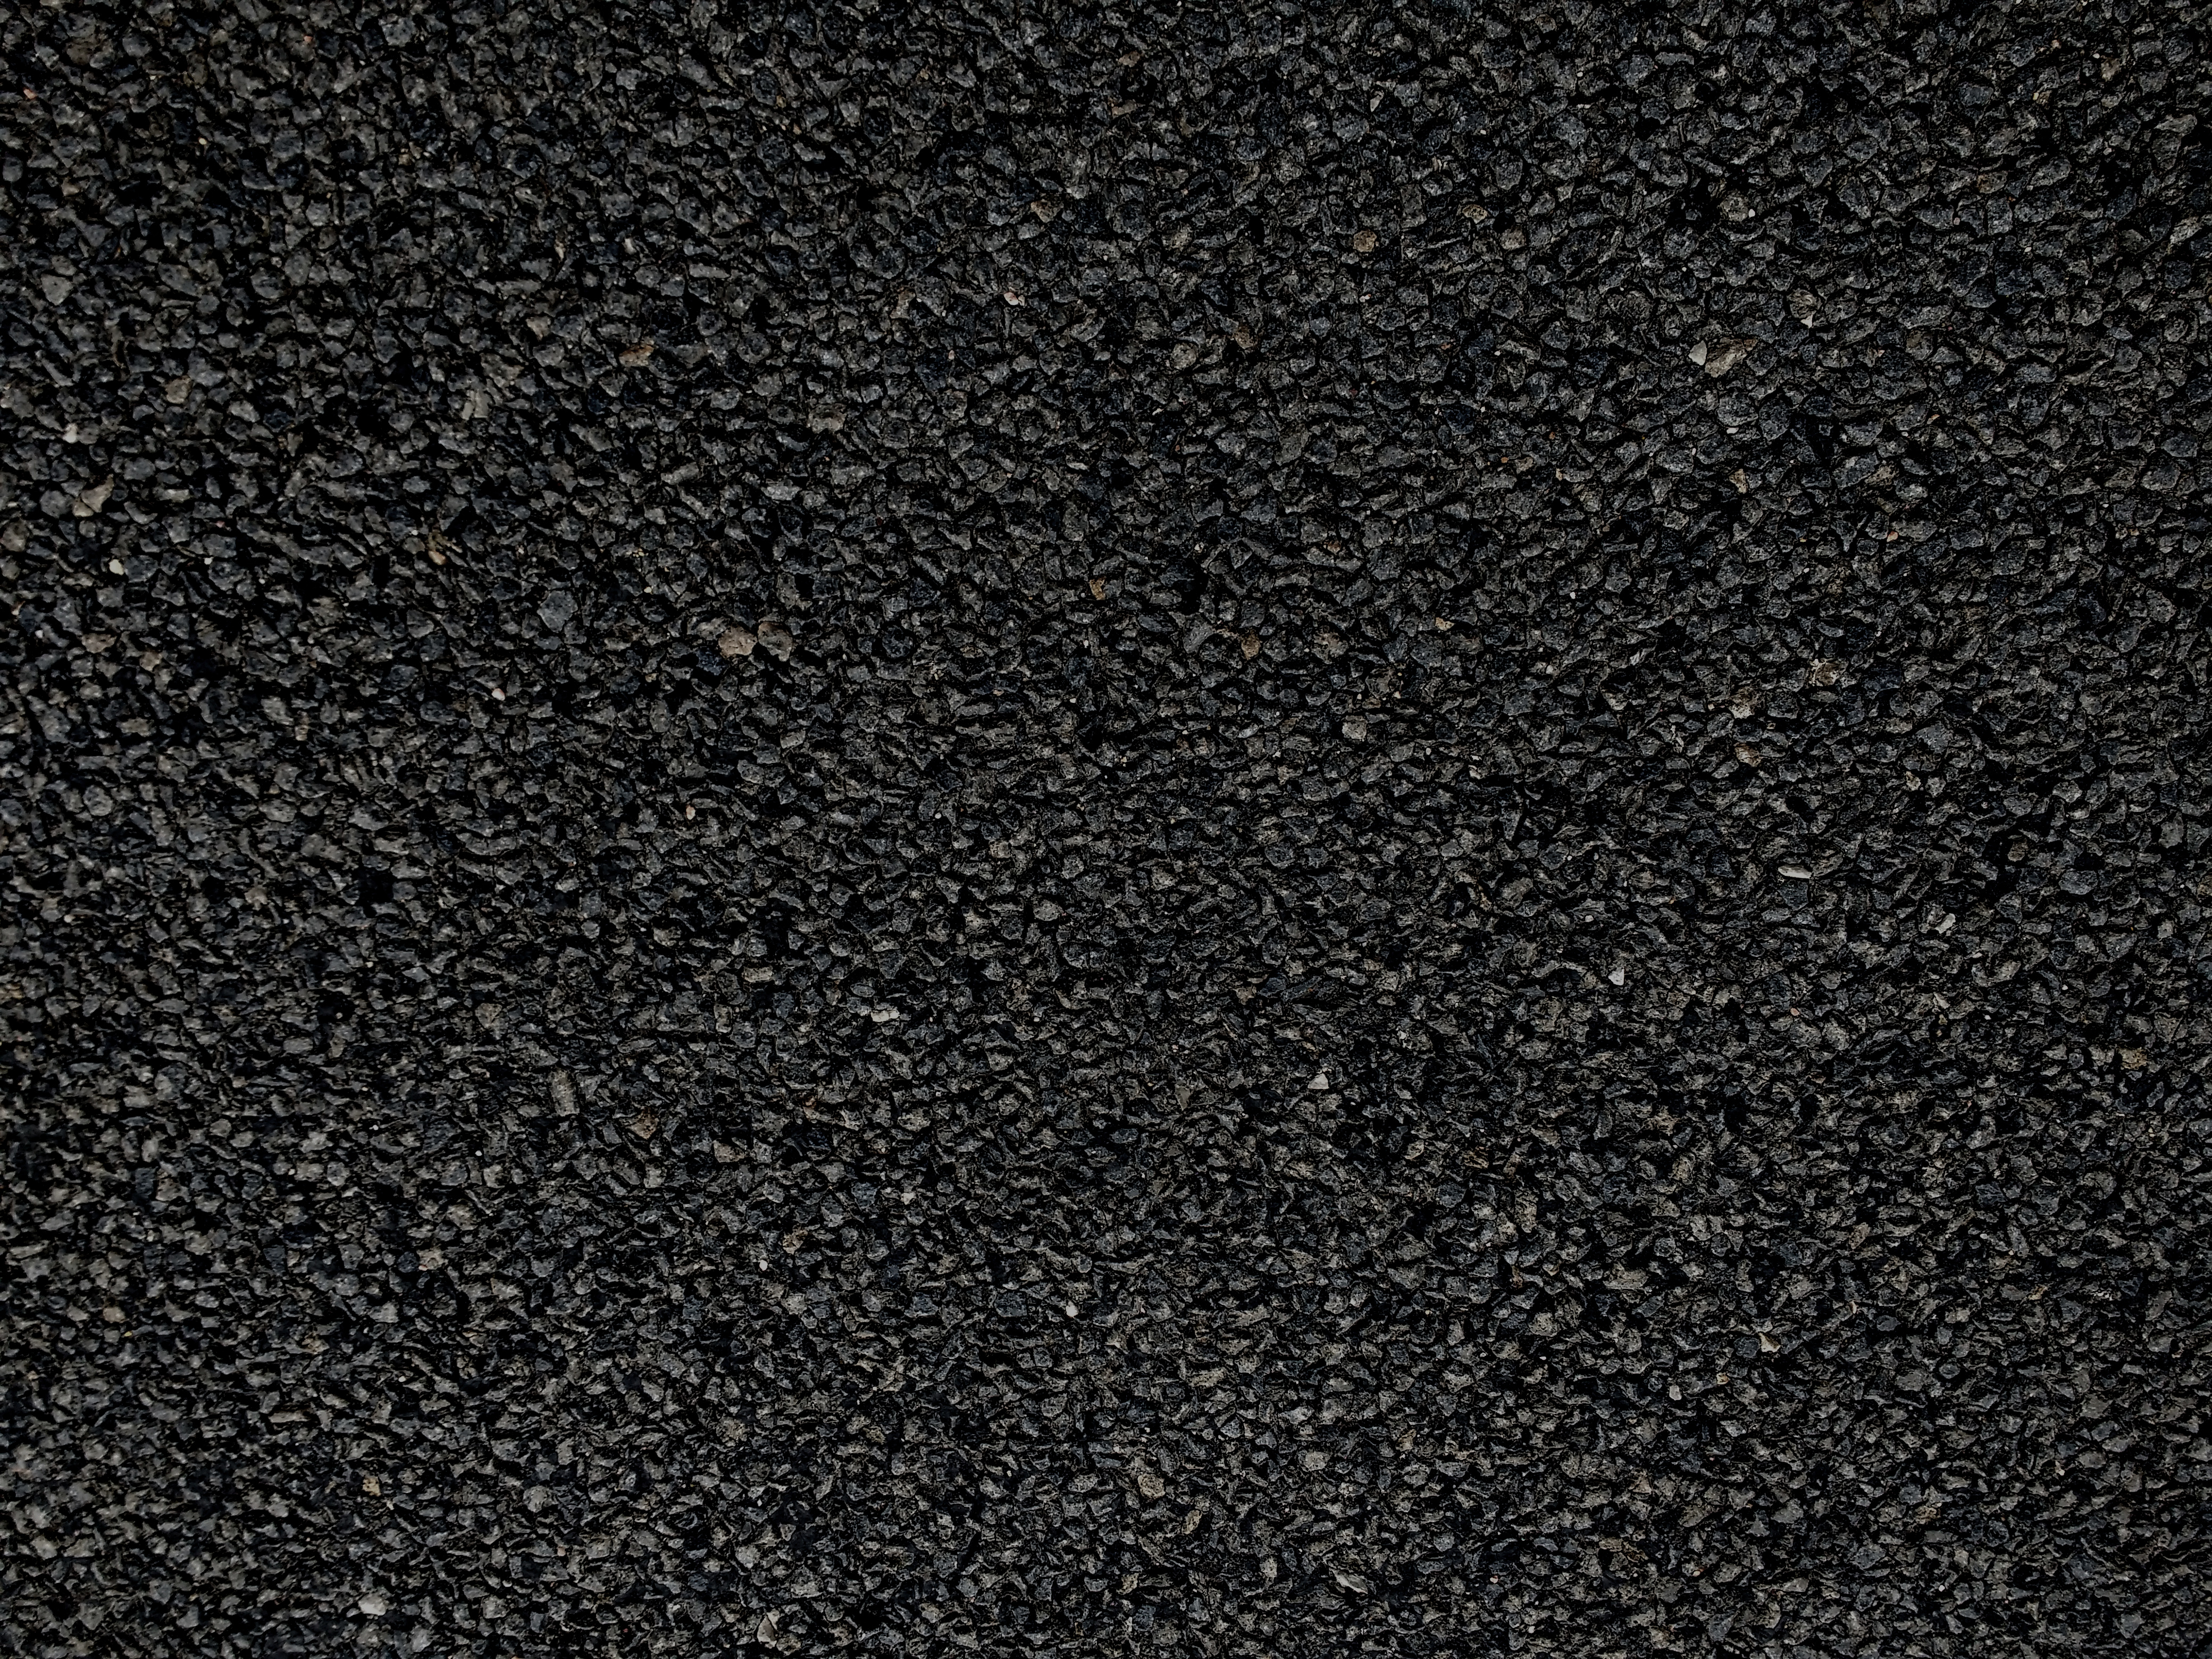 Black Asphalt Texture